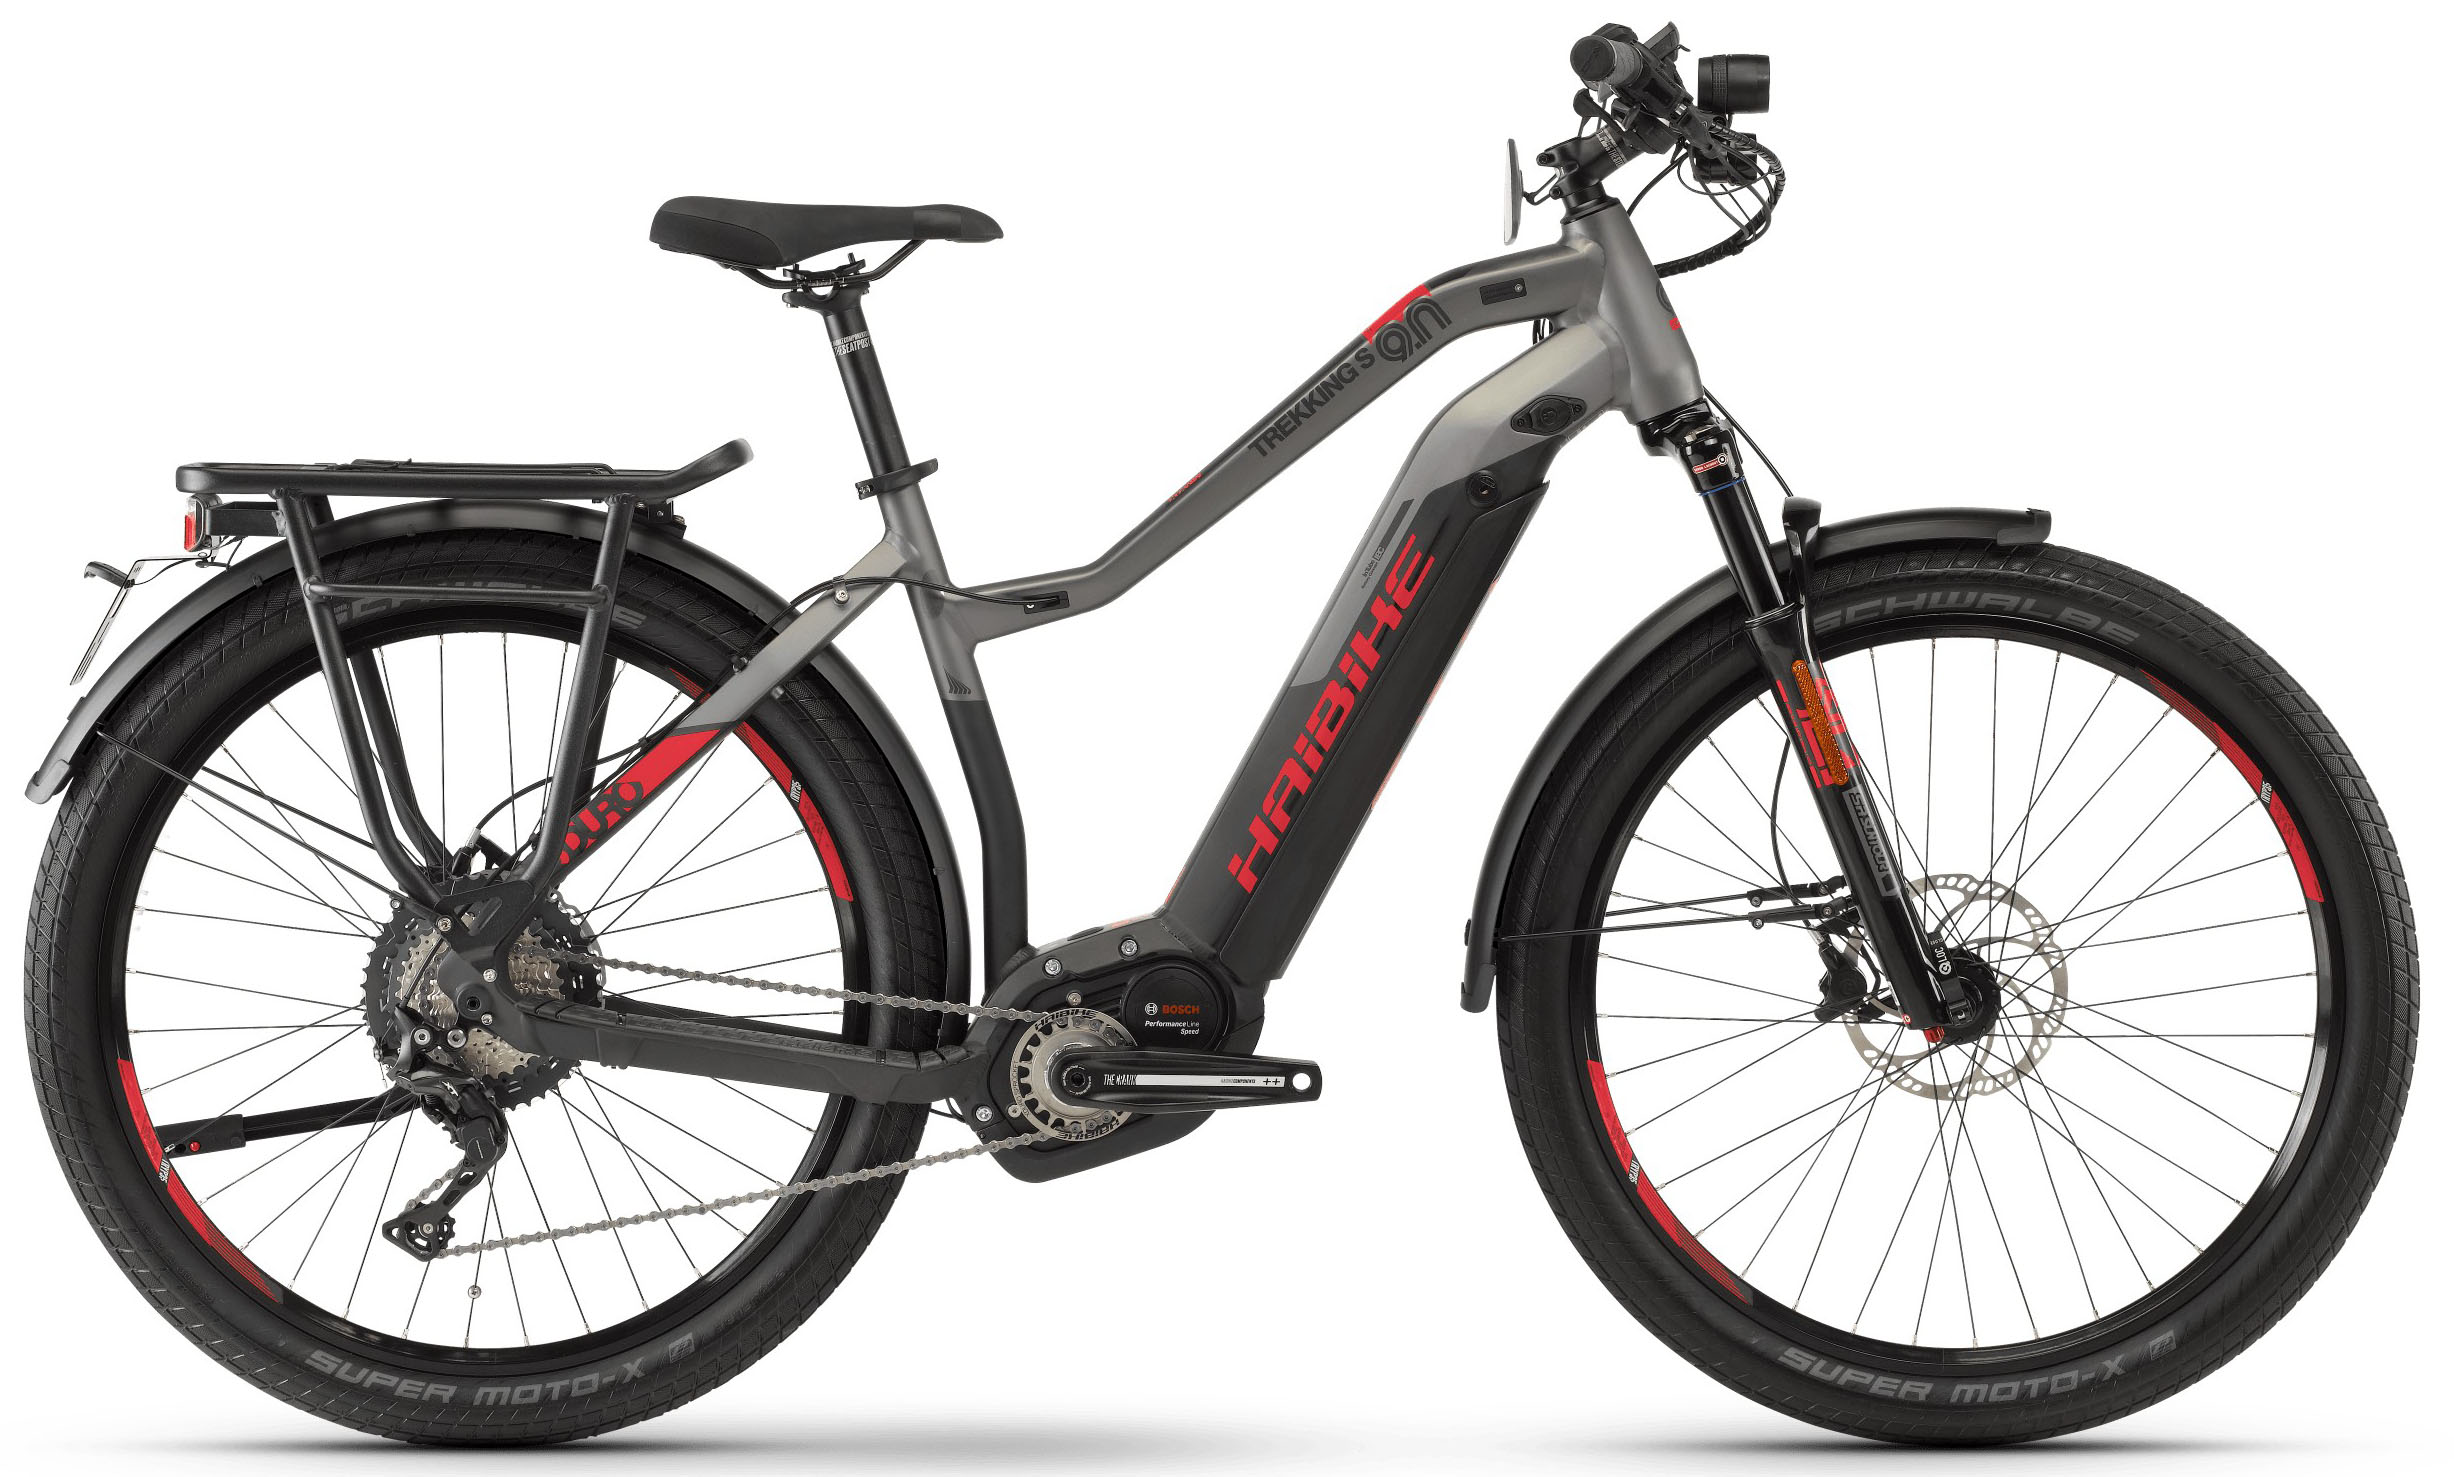  Отзывы о Трехколесный детский велосипед Haibike SDURO Trekking S 9.0 Damen i500Wh 11 XT 2019